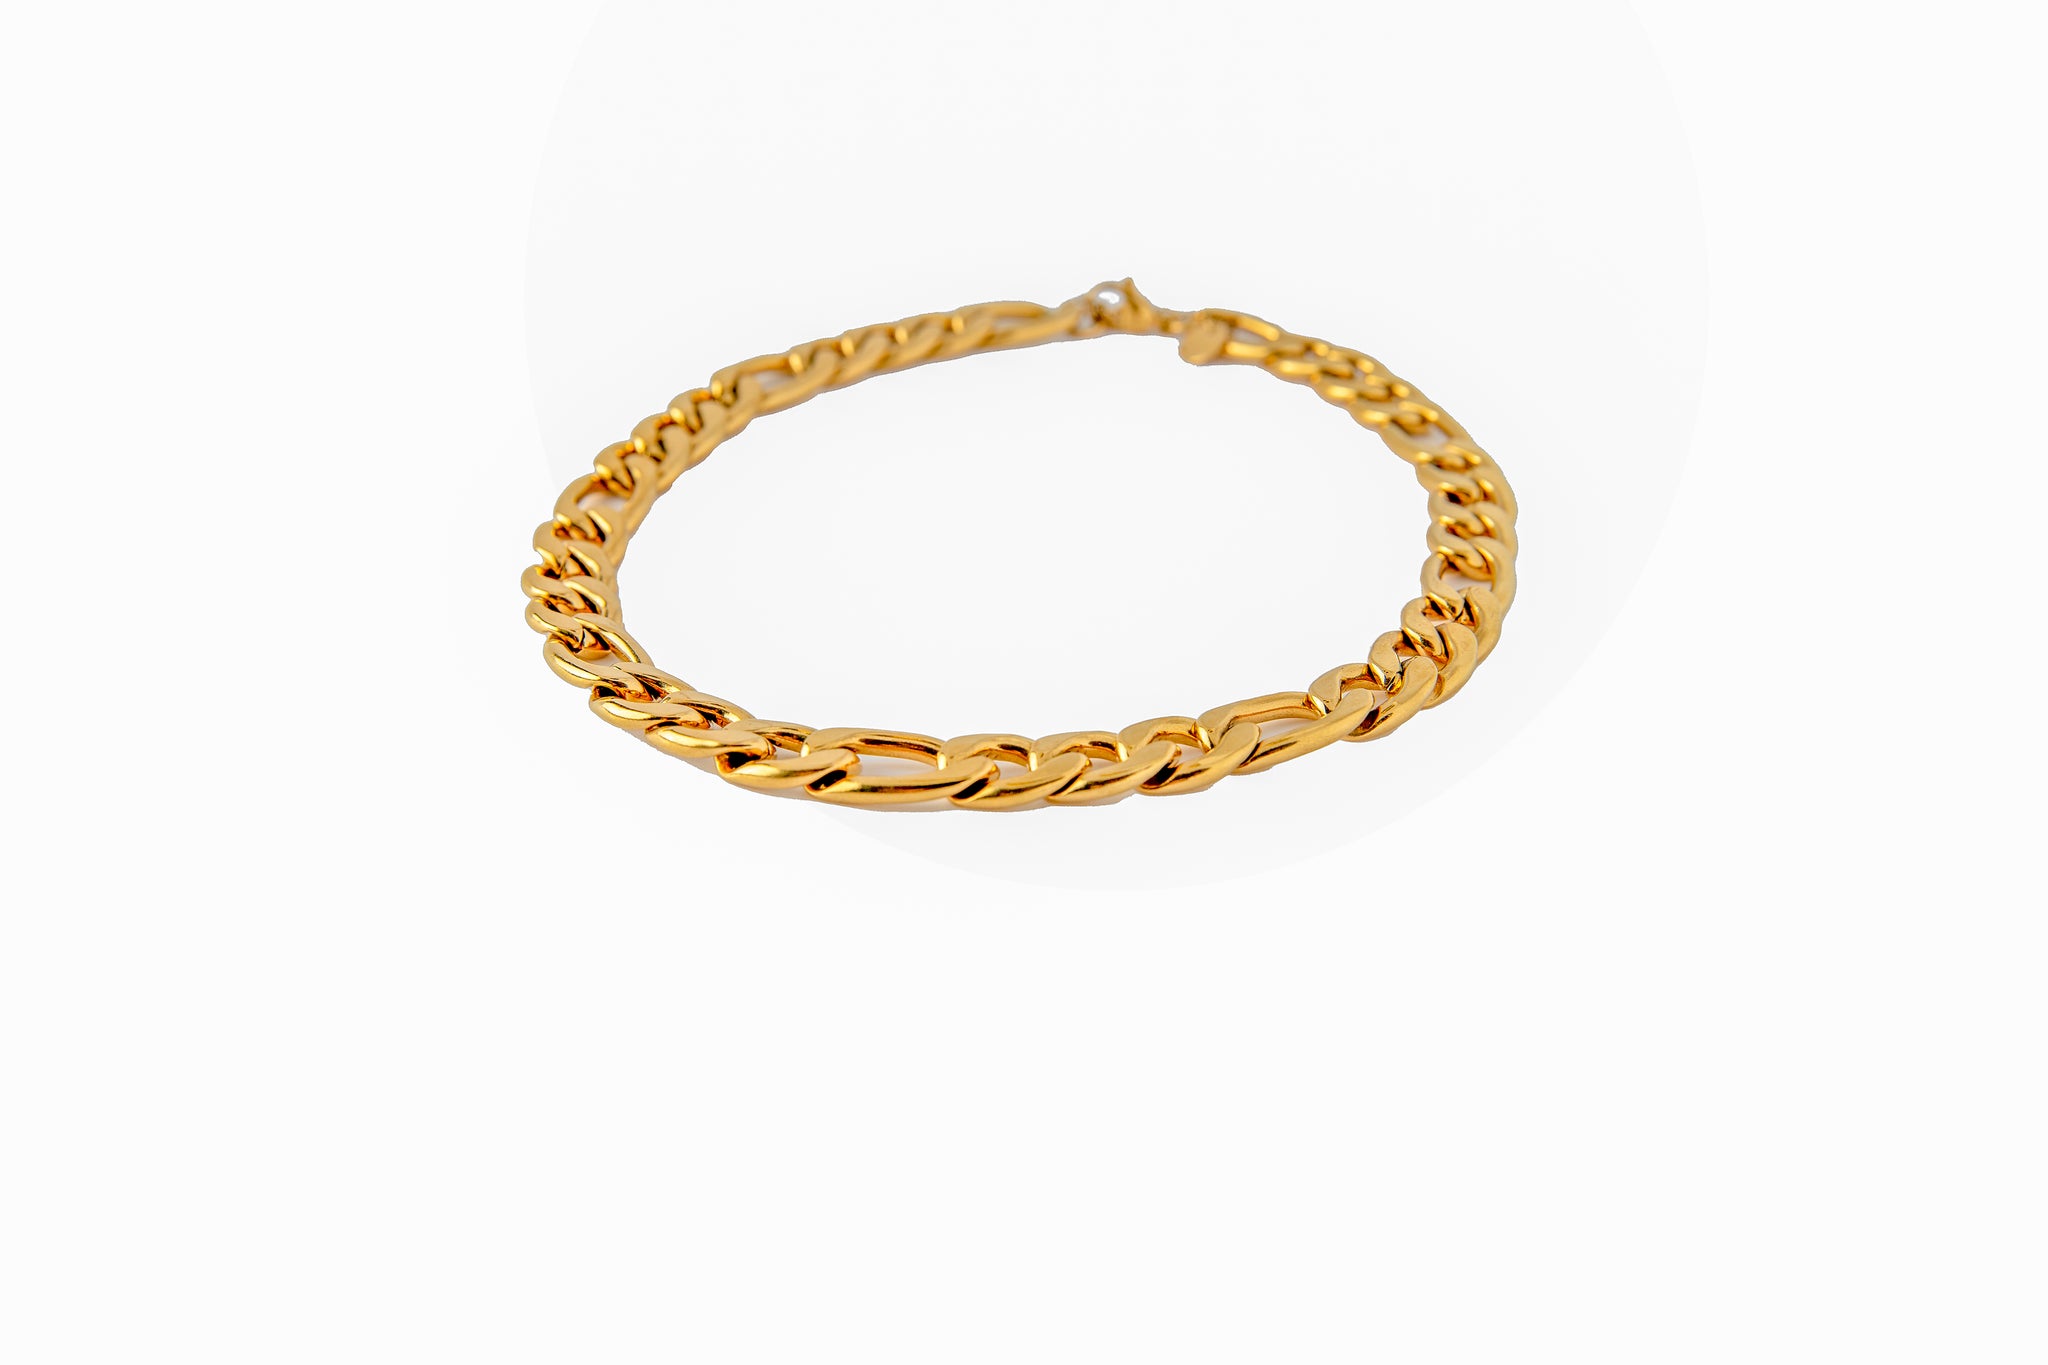 Choker Chain in gold.